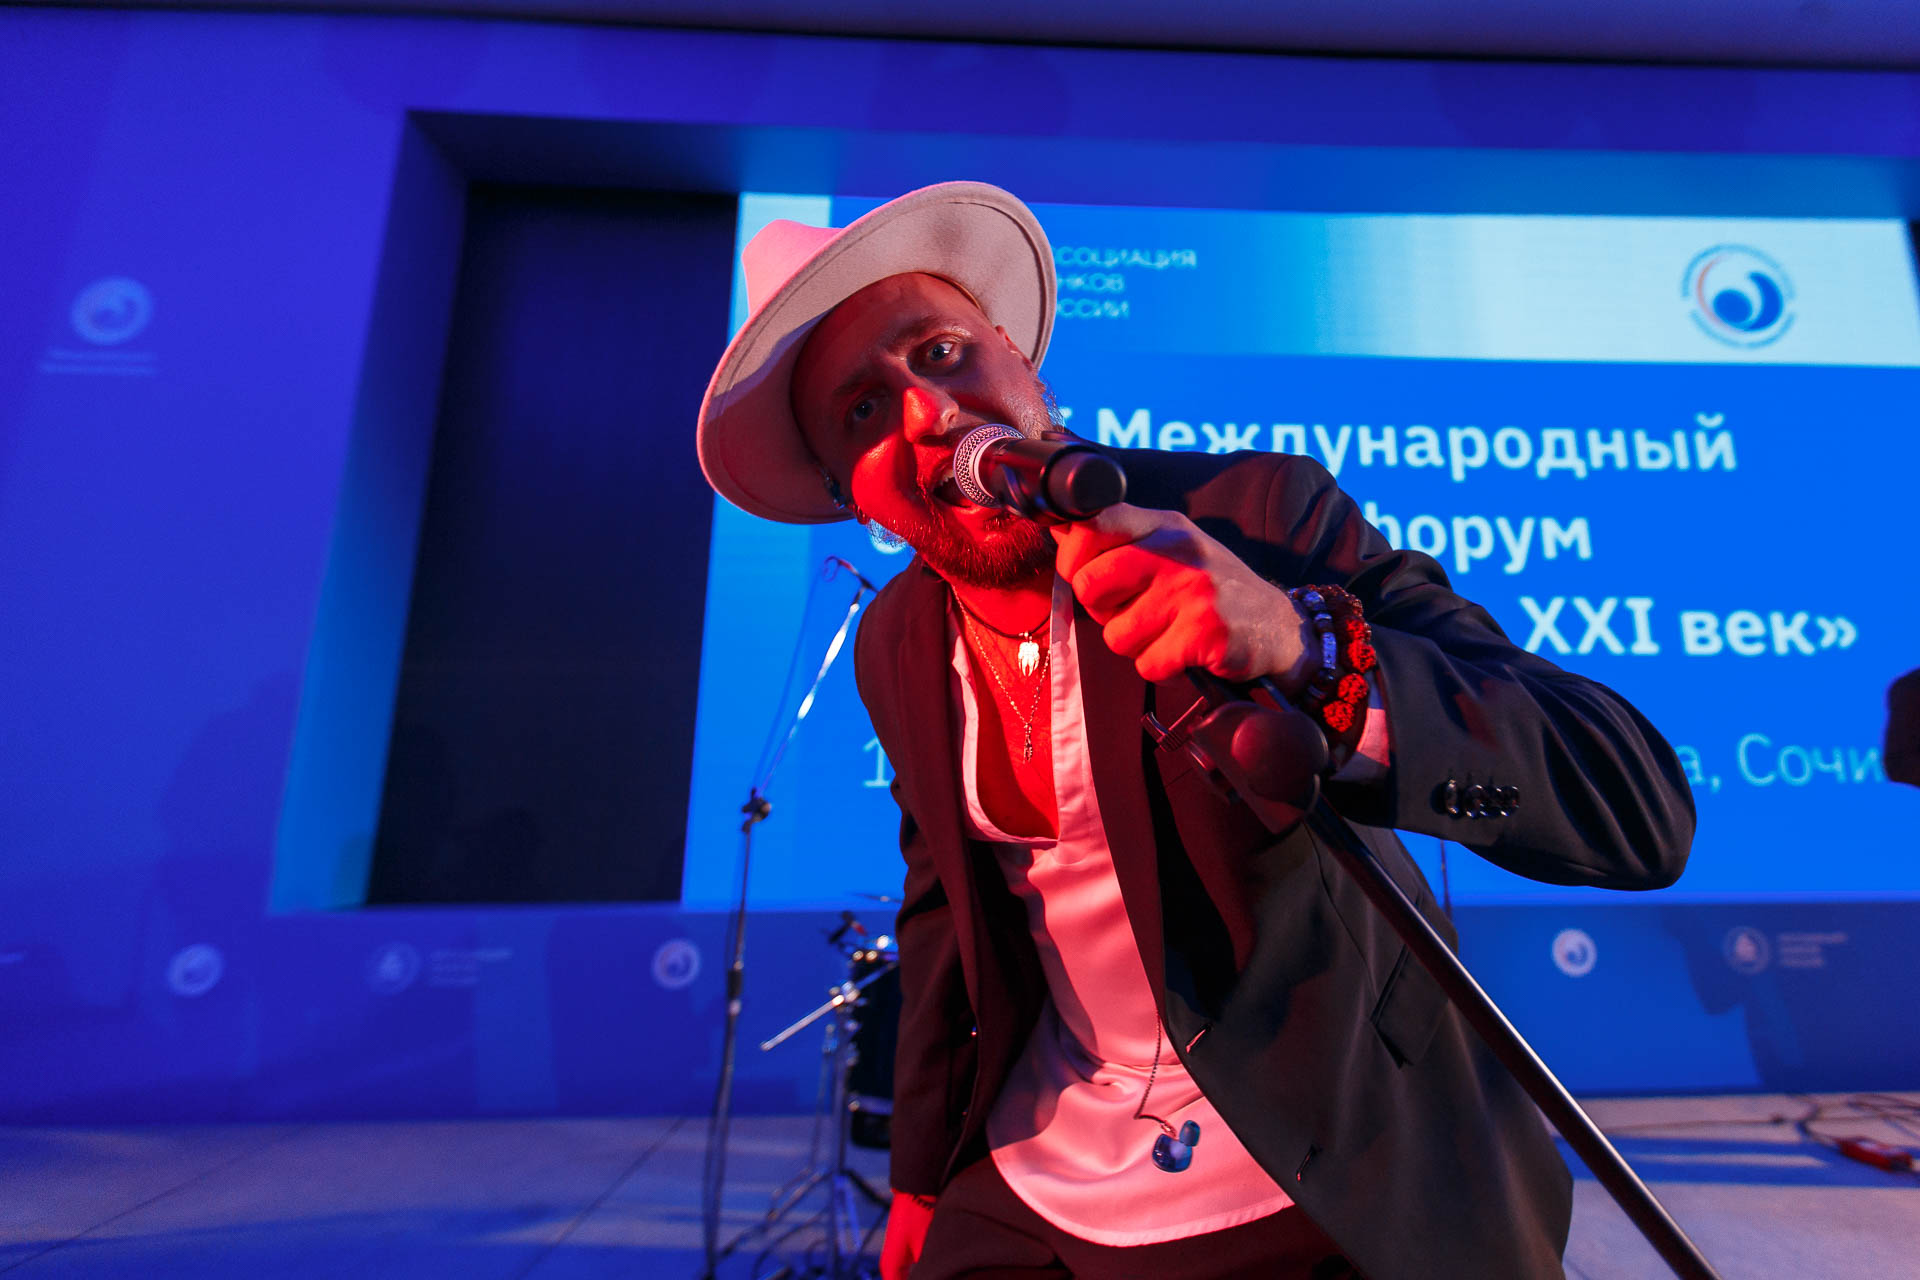 исполнитель, поющий в микрофон на сцене, освещенной ярким сценическим освещением, с экраном, отображающим детали конференции в Сочи